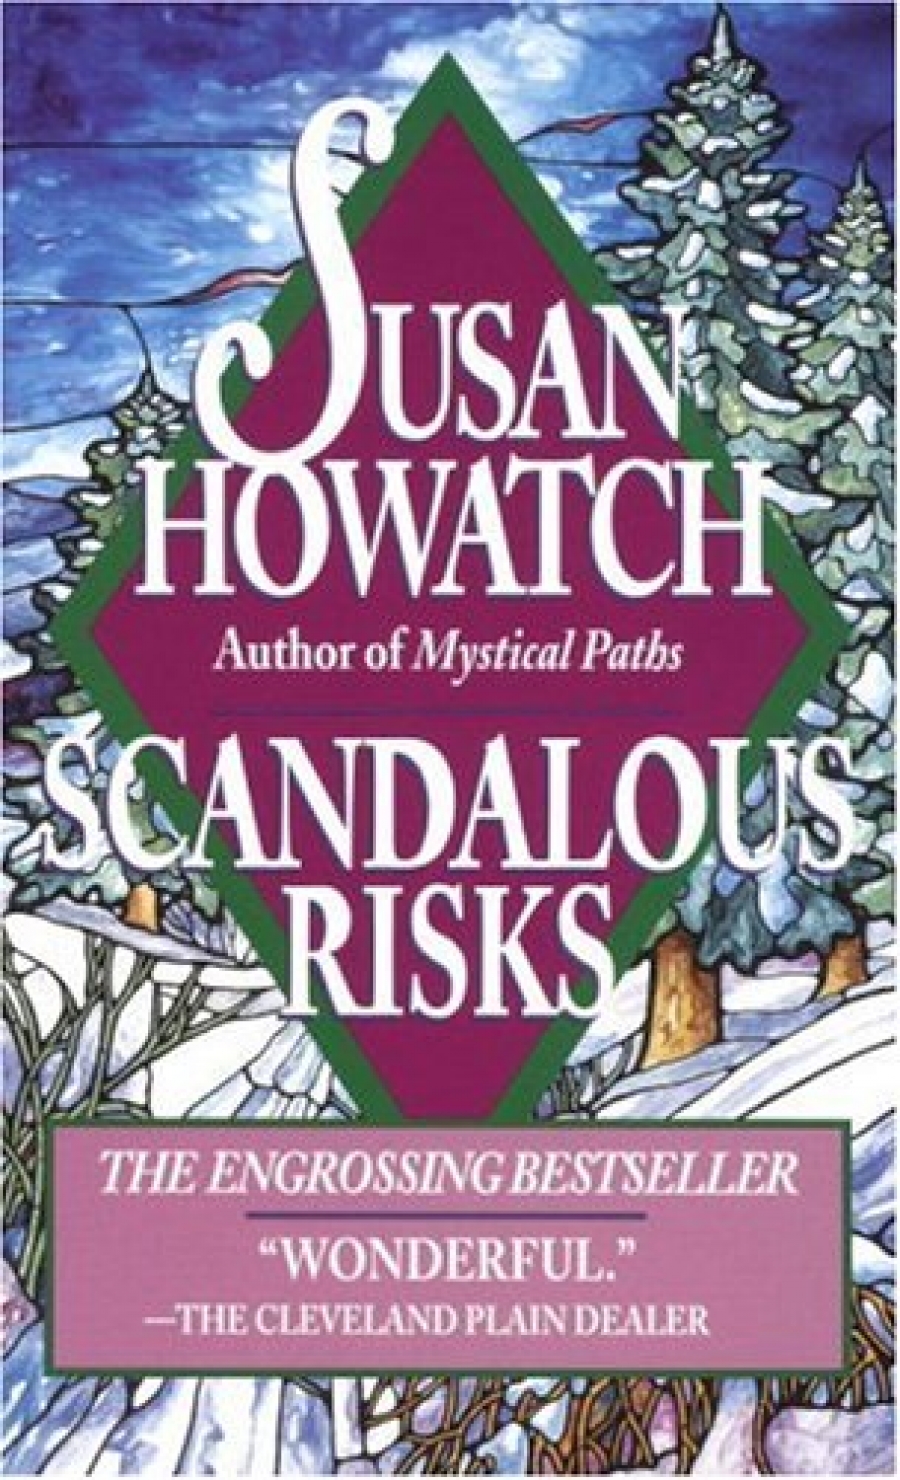 Susan, Howatch Scandalous Risks 